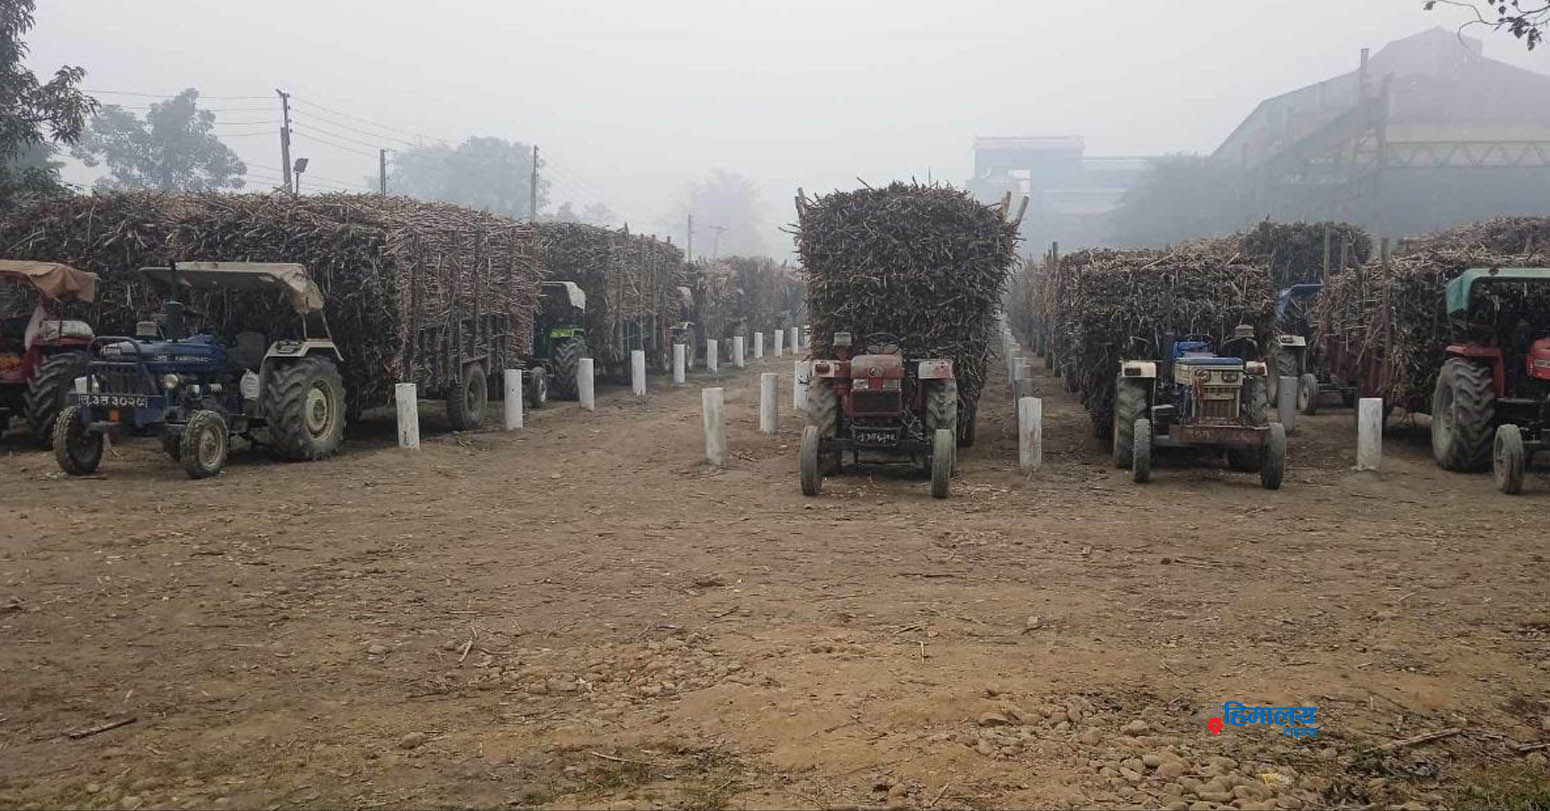 बागमती चिनी मिलले उखु किसानलाई दुई क्वीन्टलका दरले थप रकम दिने